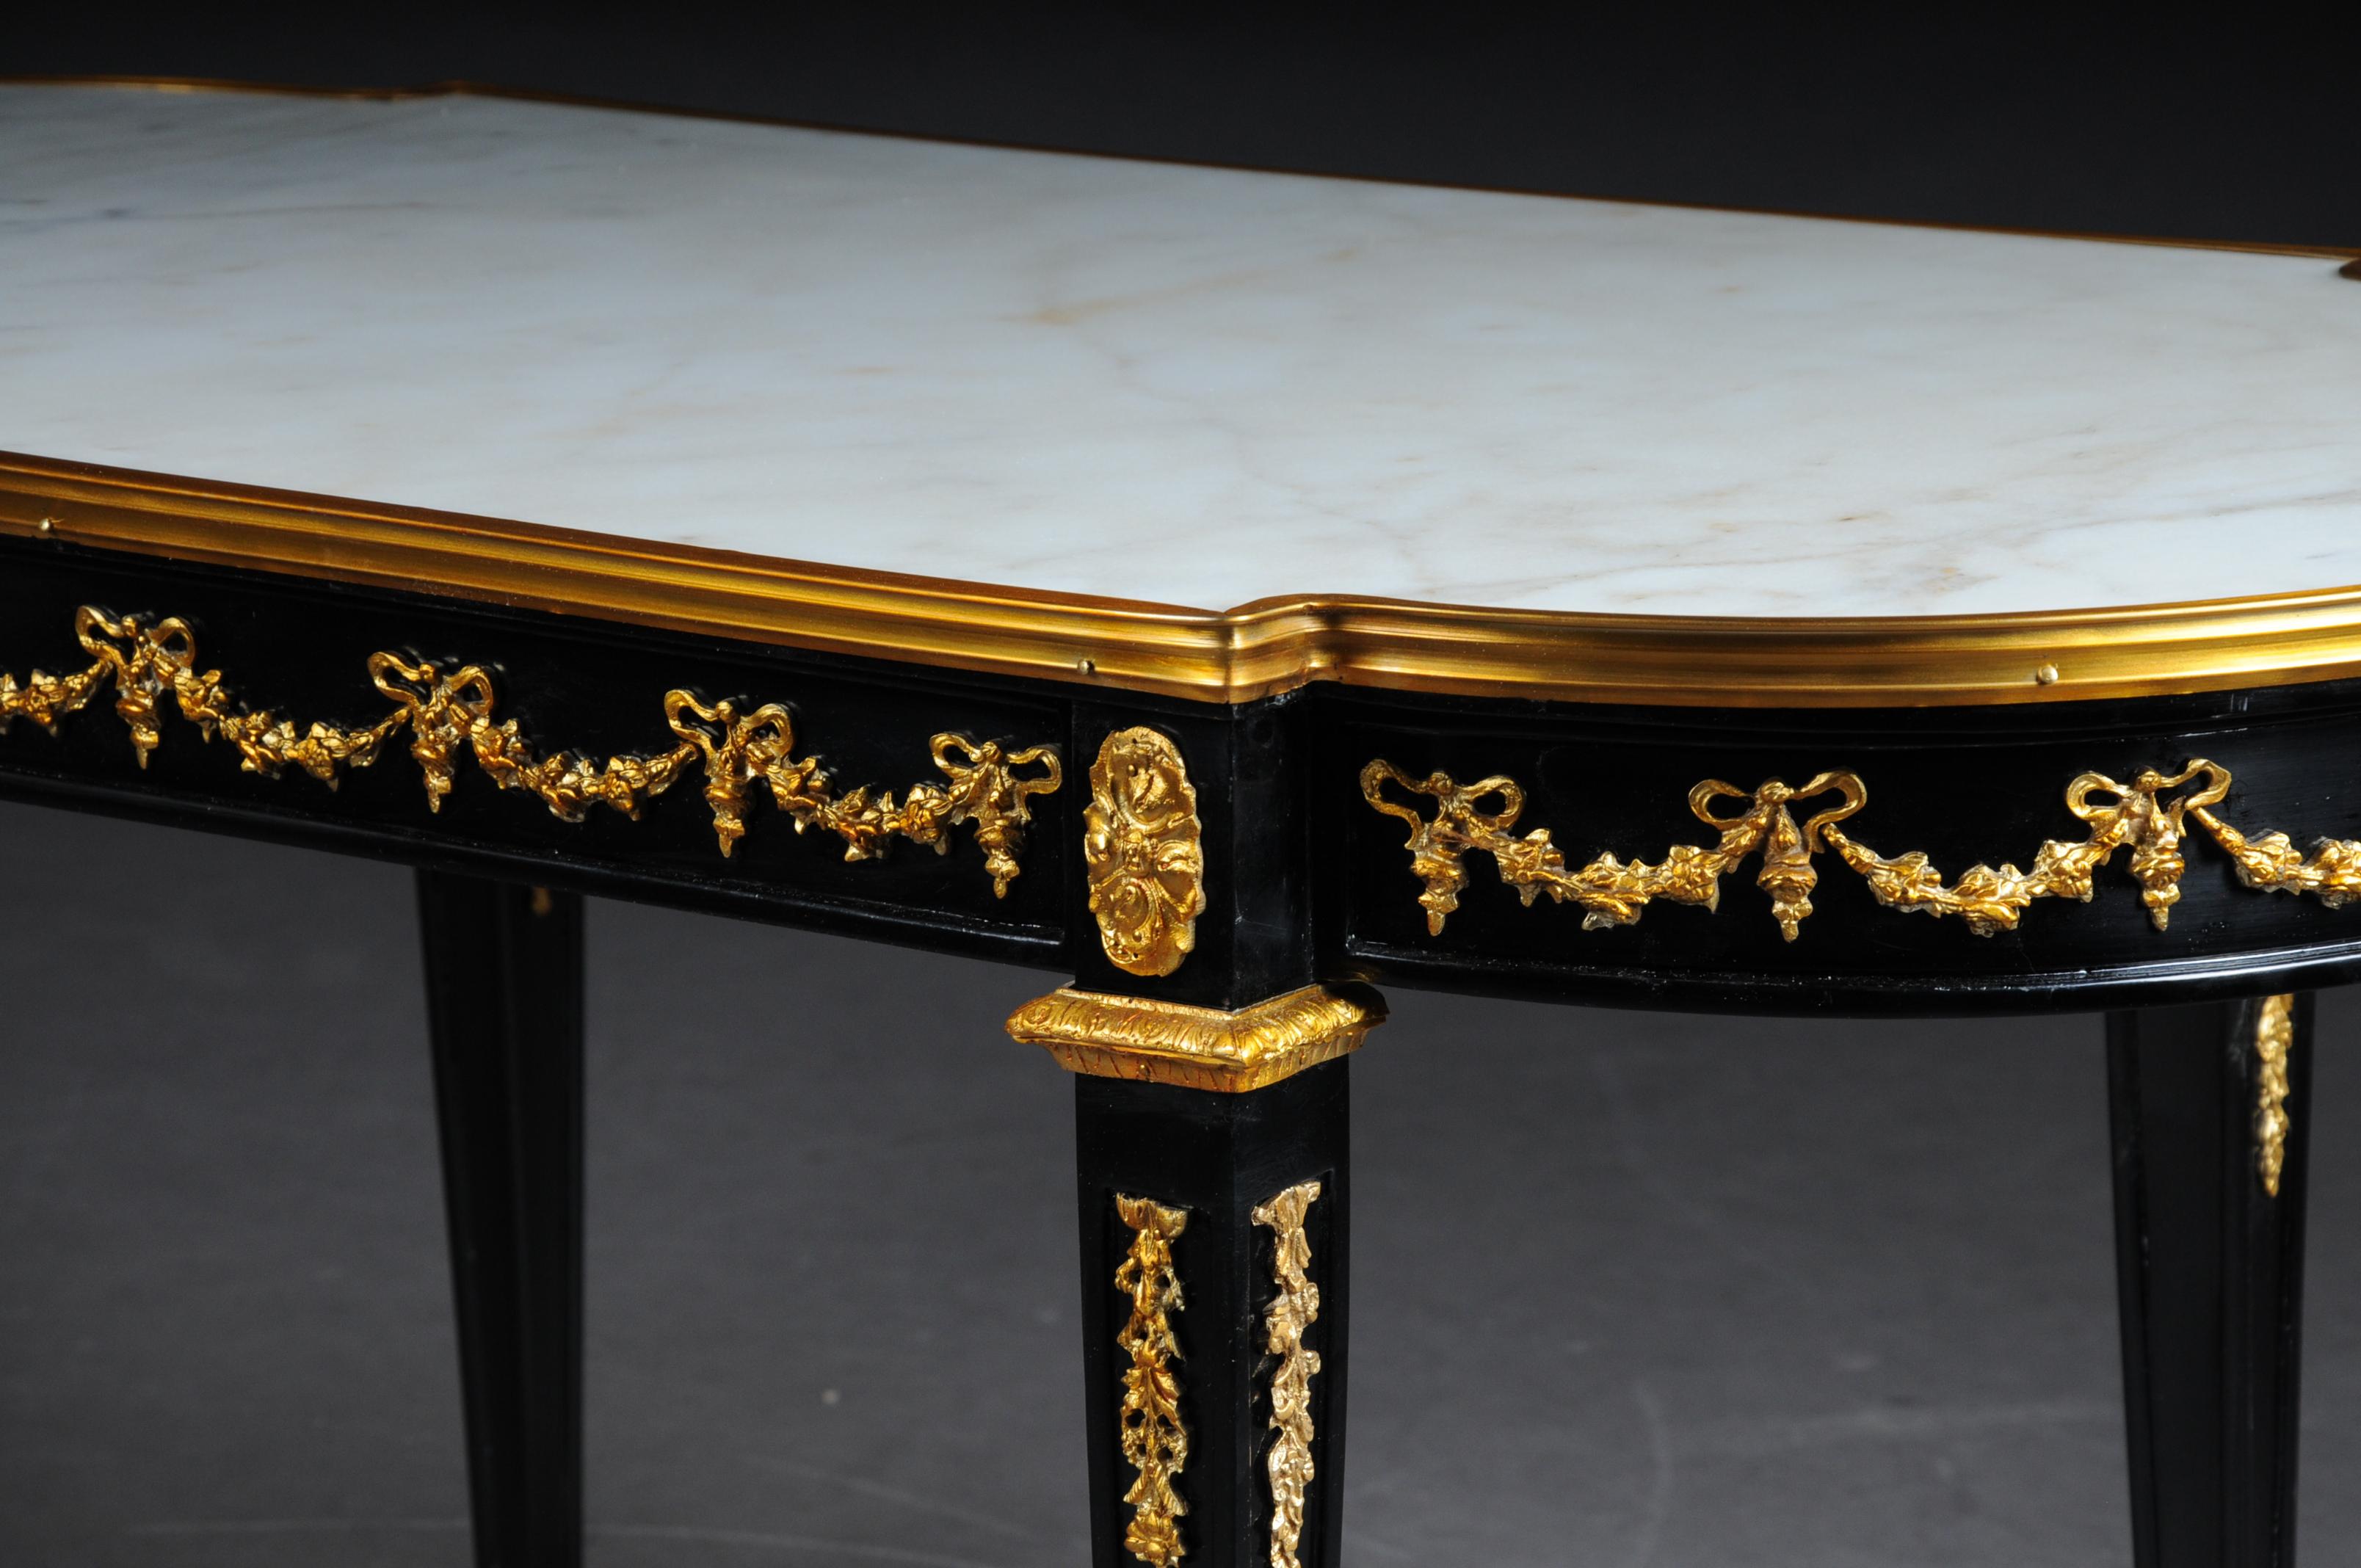 Designer Couchtisch in Louis XVI schwarz, weißer Marmor

Massivholz Buche schwarz lackiert und mit vergoldeter Bronze. Leicht vorstehende eingelegte weiße Marmorplatte. Äußerst dekorativ

(A-Gm-180).